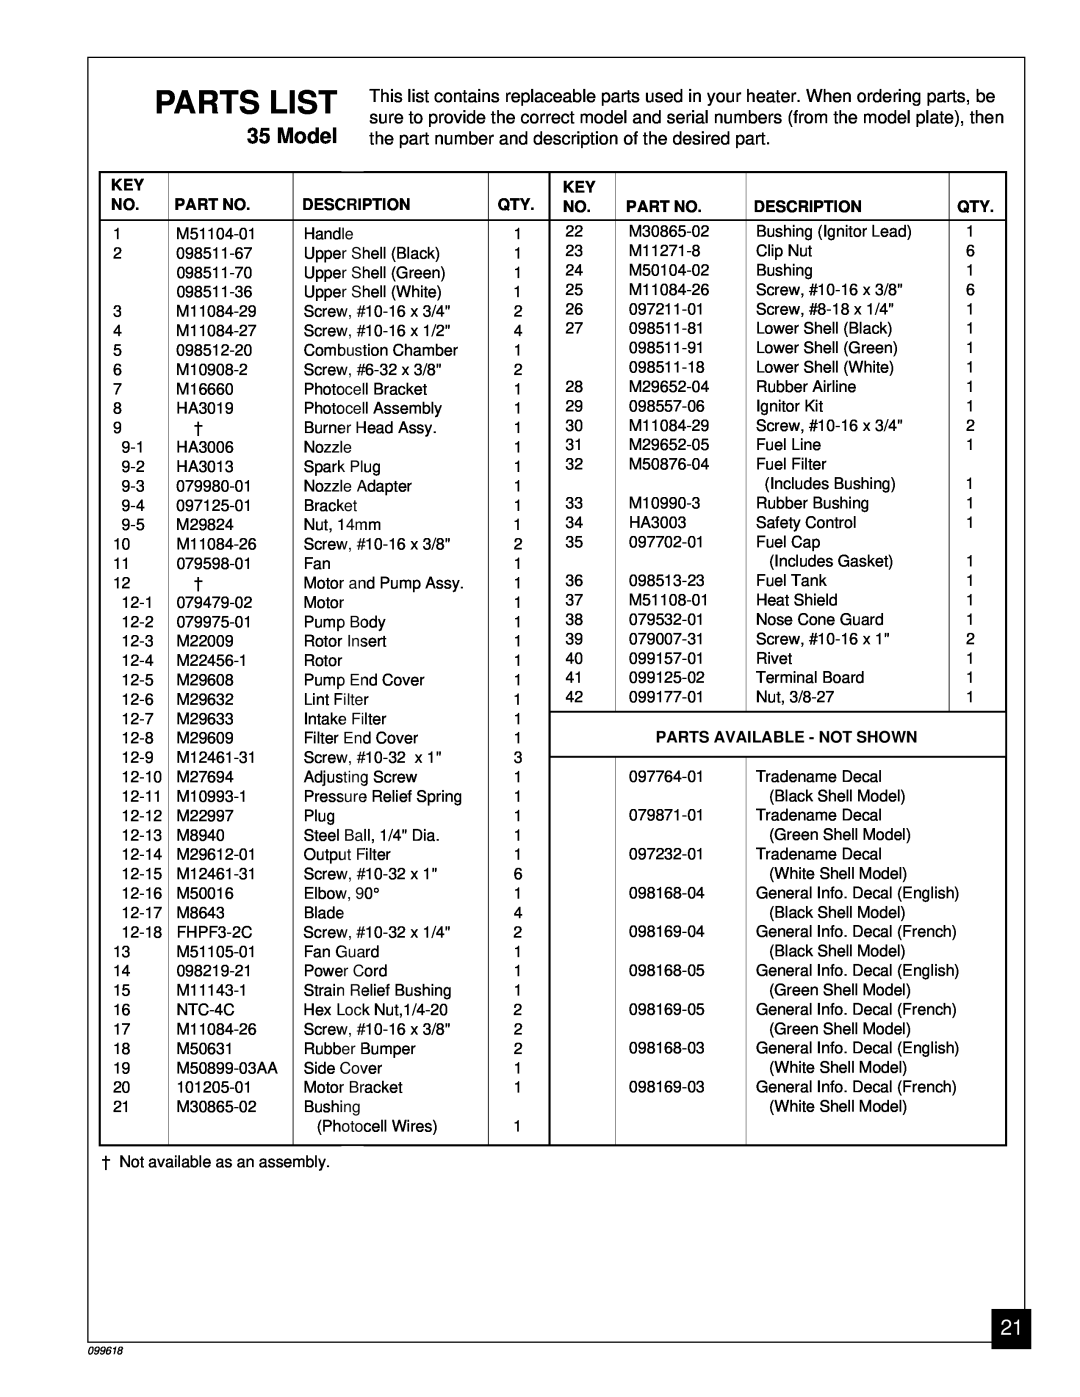 Desa 50 owner manual Parts List, Description, Parts Available - Not Shown 